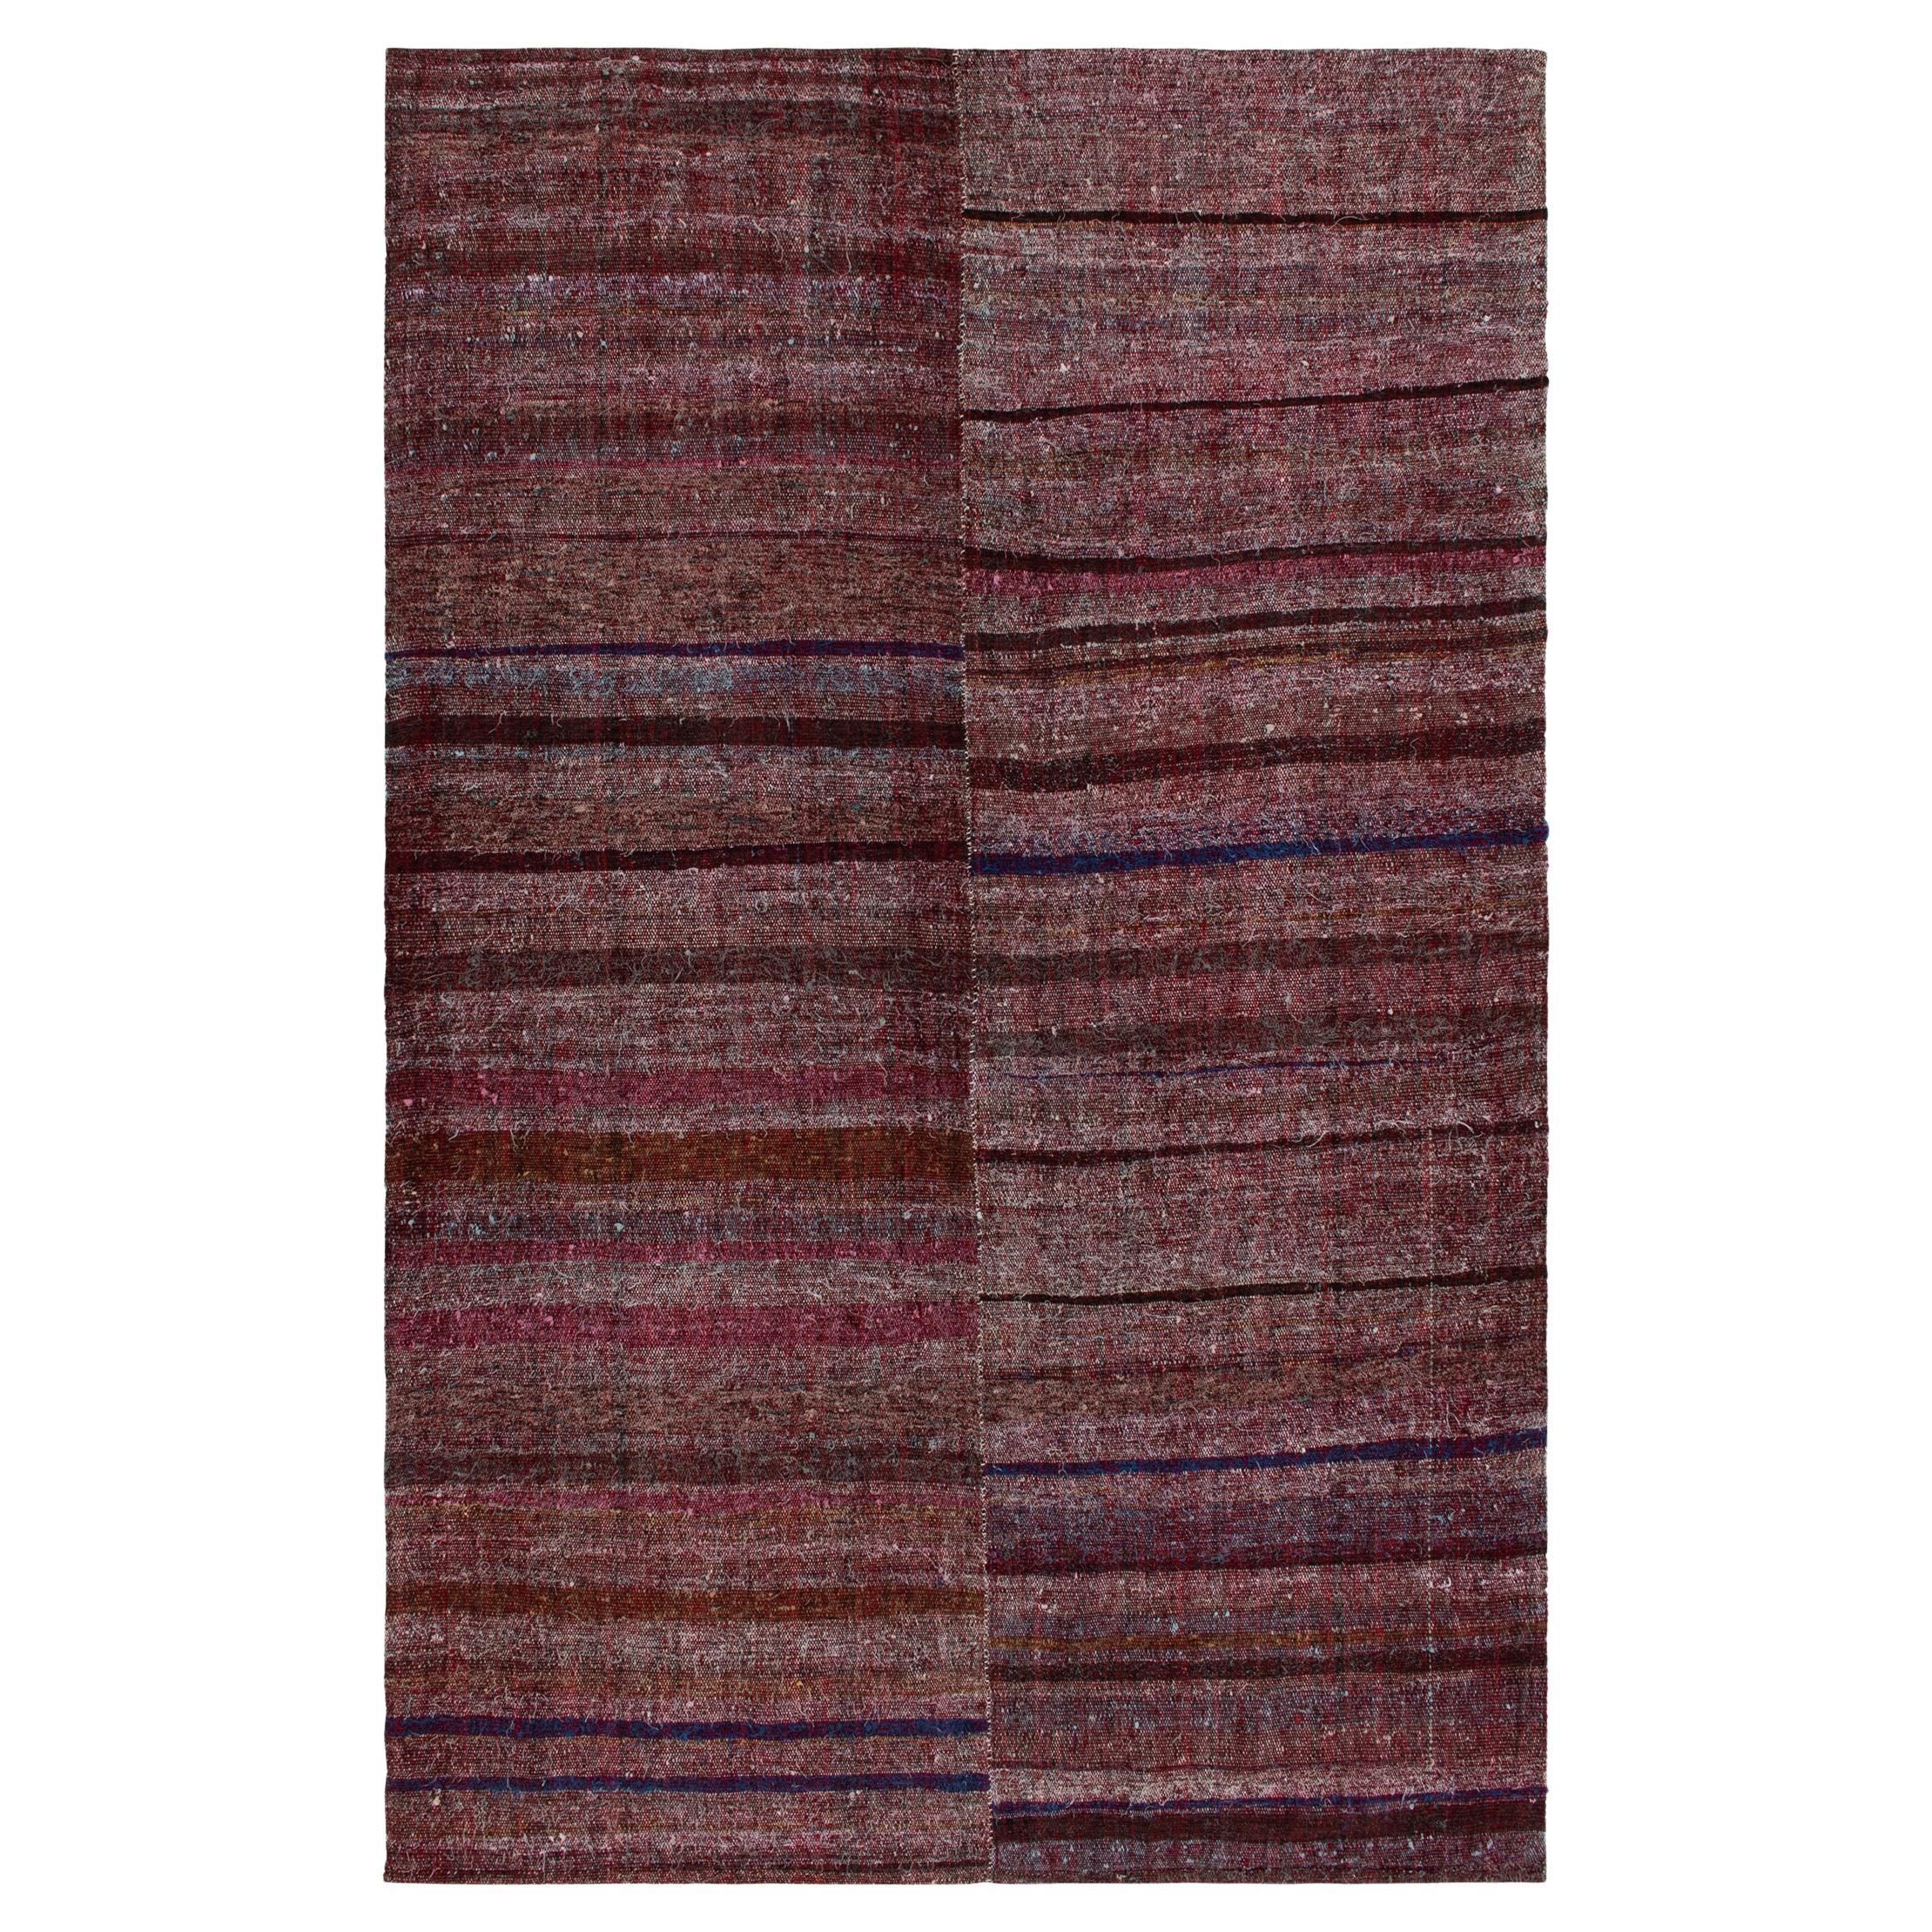 Vintage Paneled Kilim in Purple, Blue & Brown Stripe Patterns, from Rug & Kilim